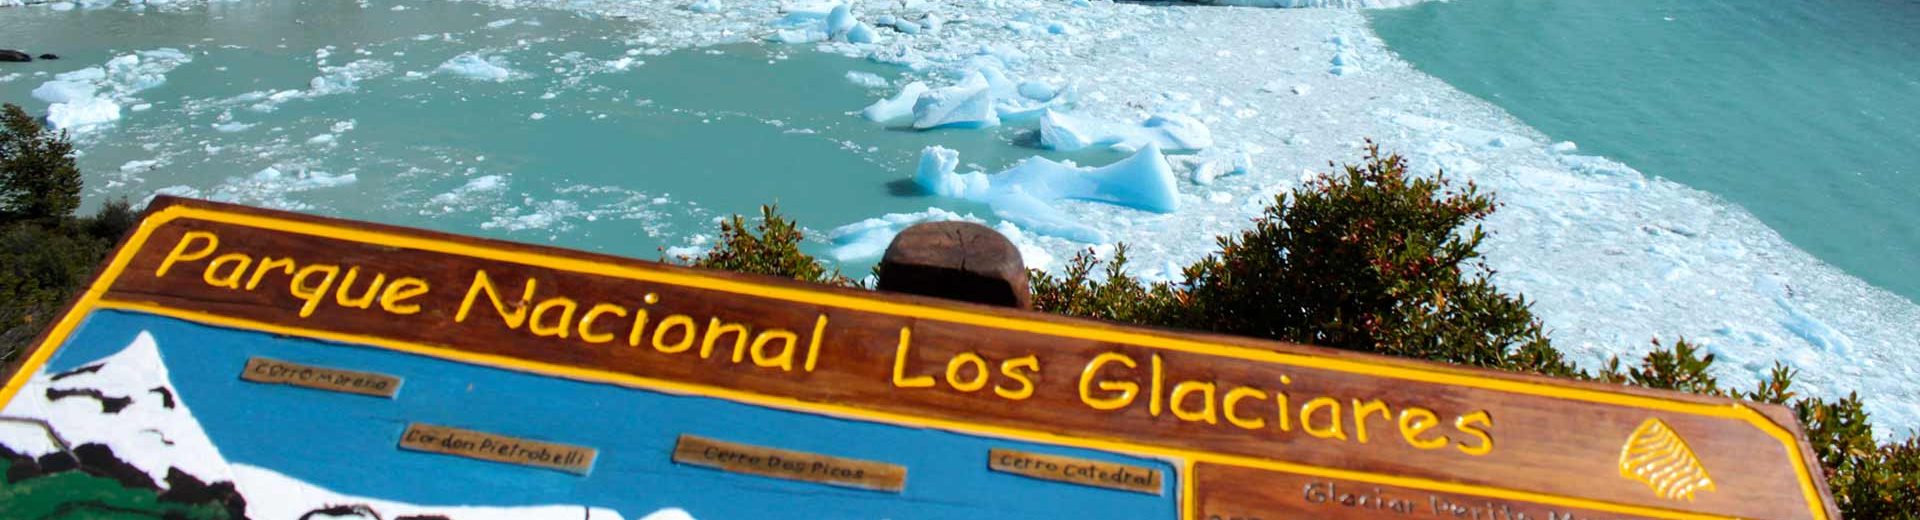 Parque Nacional los Glaciares: Um lugar para descobrir